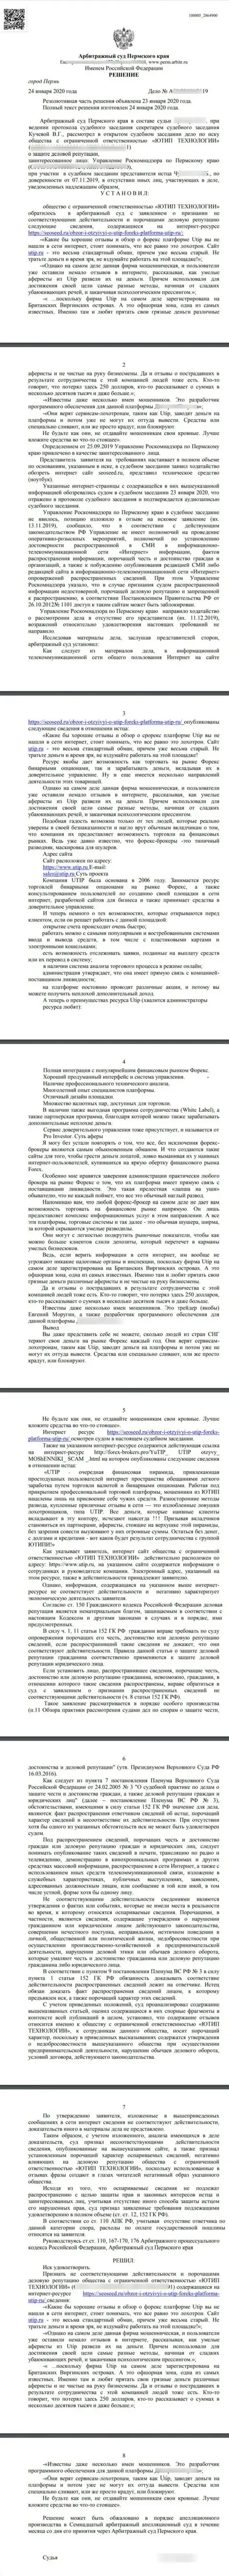 Судебный иск махинаторов UTIP Ru в адрес интернет-портала СеоСид, который был удовлетворён самым справедливым судом